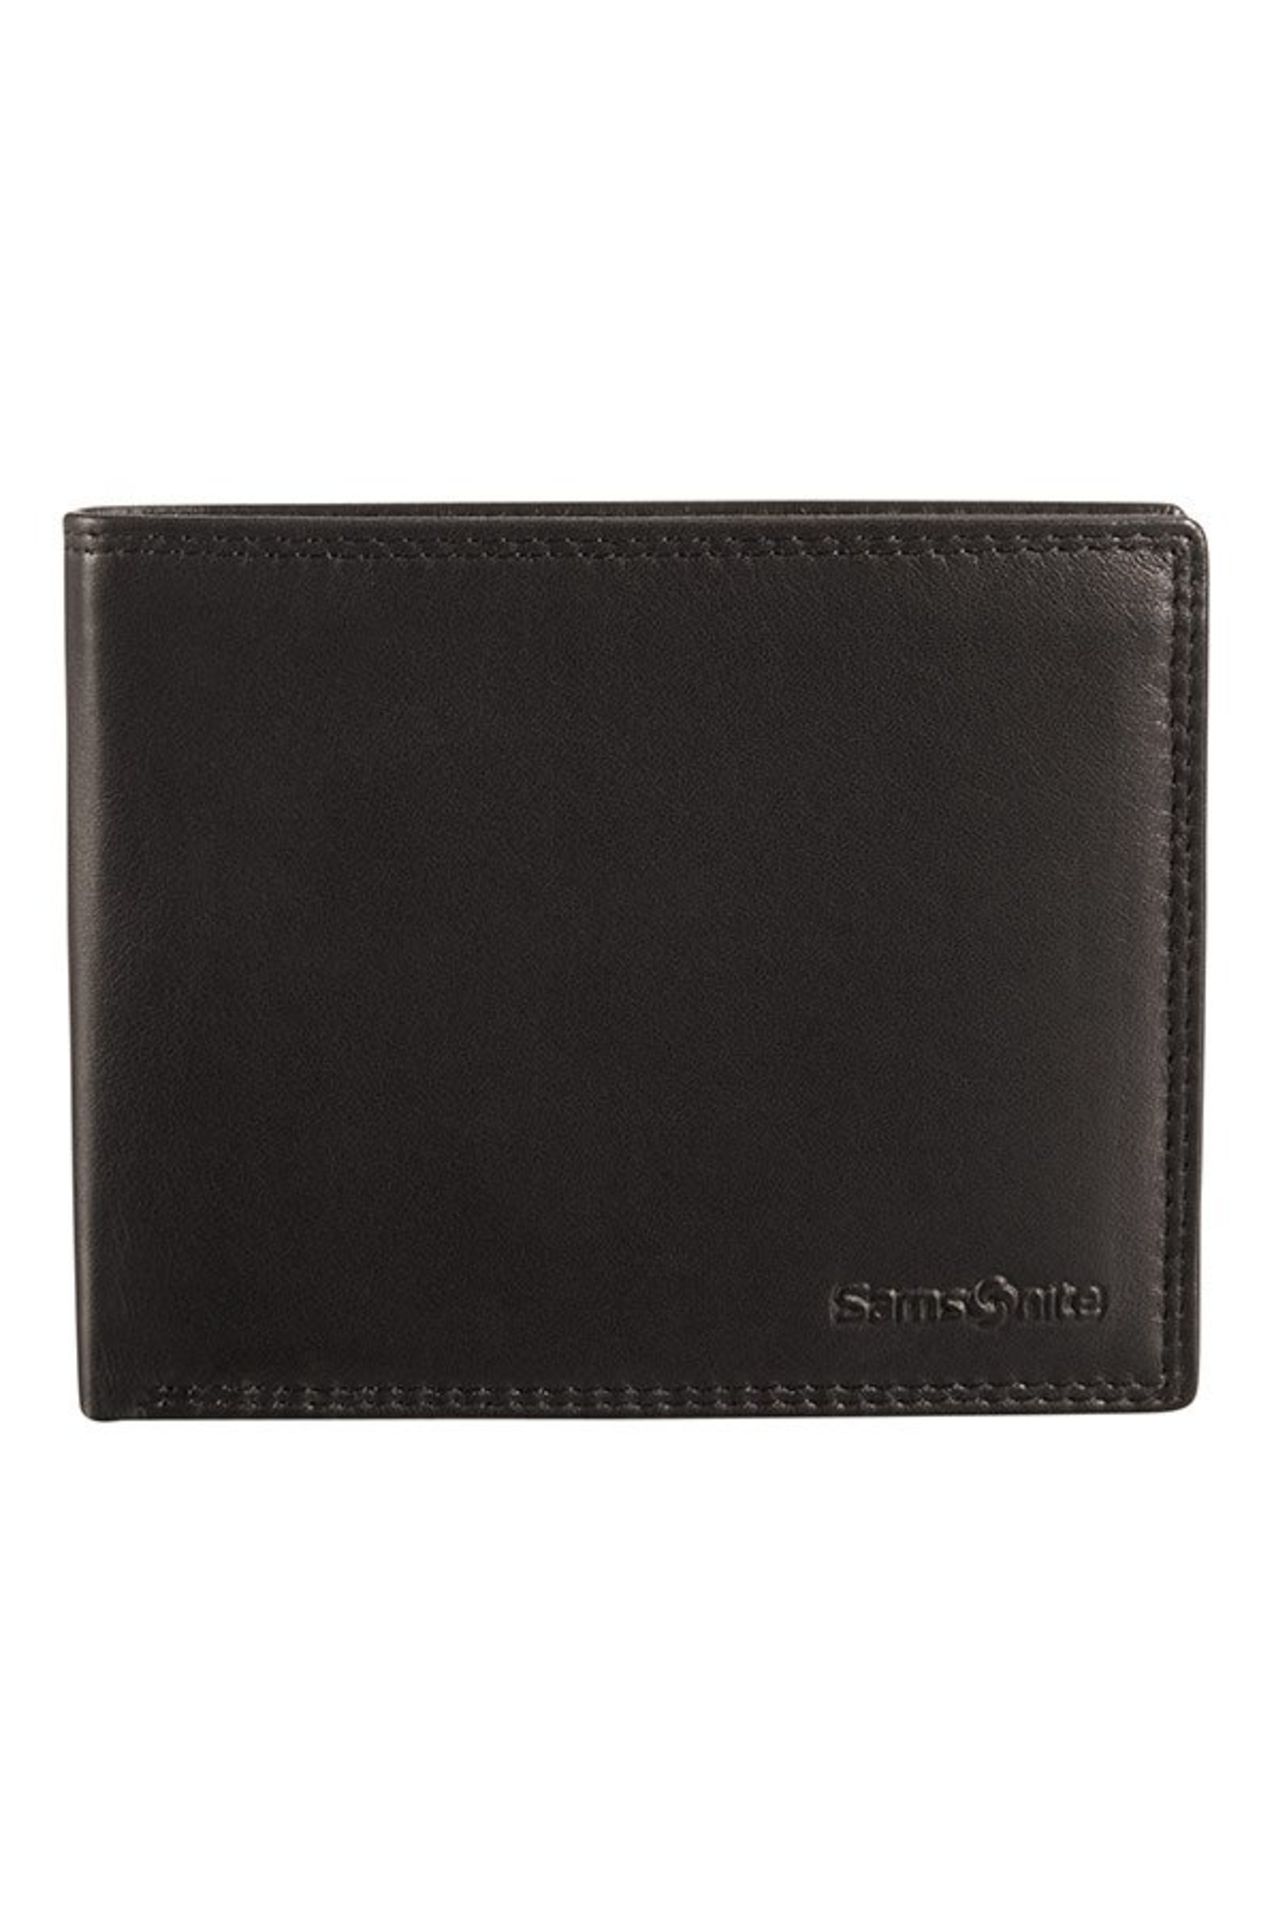 V Brand New Samsonite Gents Black Leather Wallet - 3 Credit Card Slots - Zip Pocket Section - 2 Note - Image 2 of 2